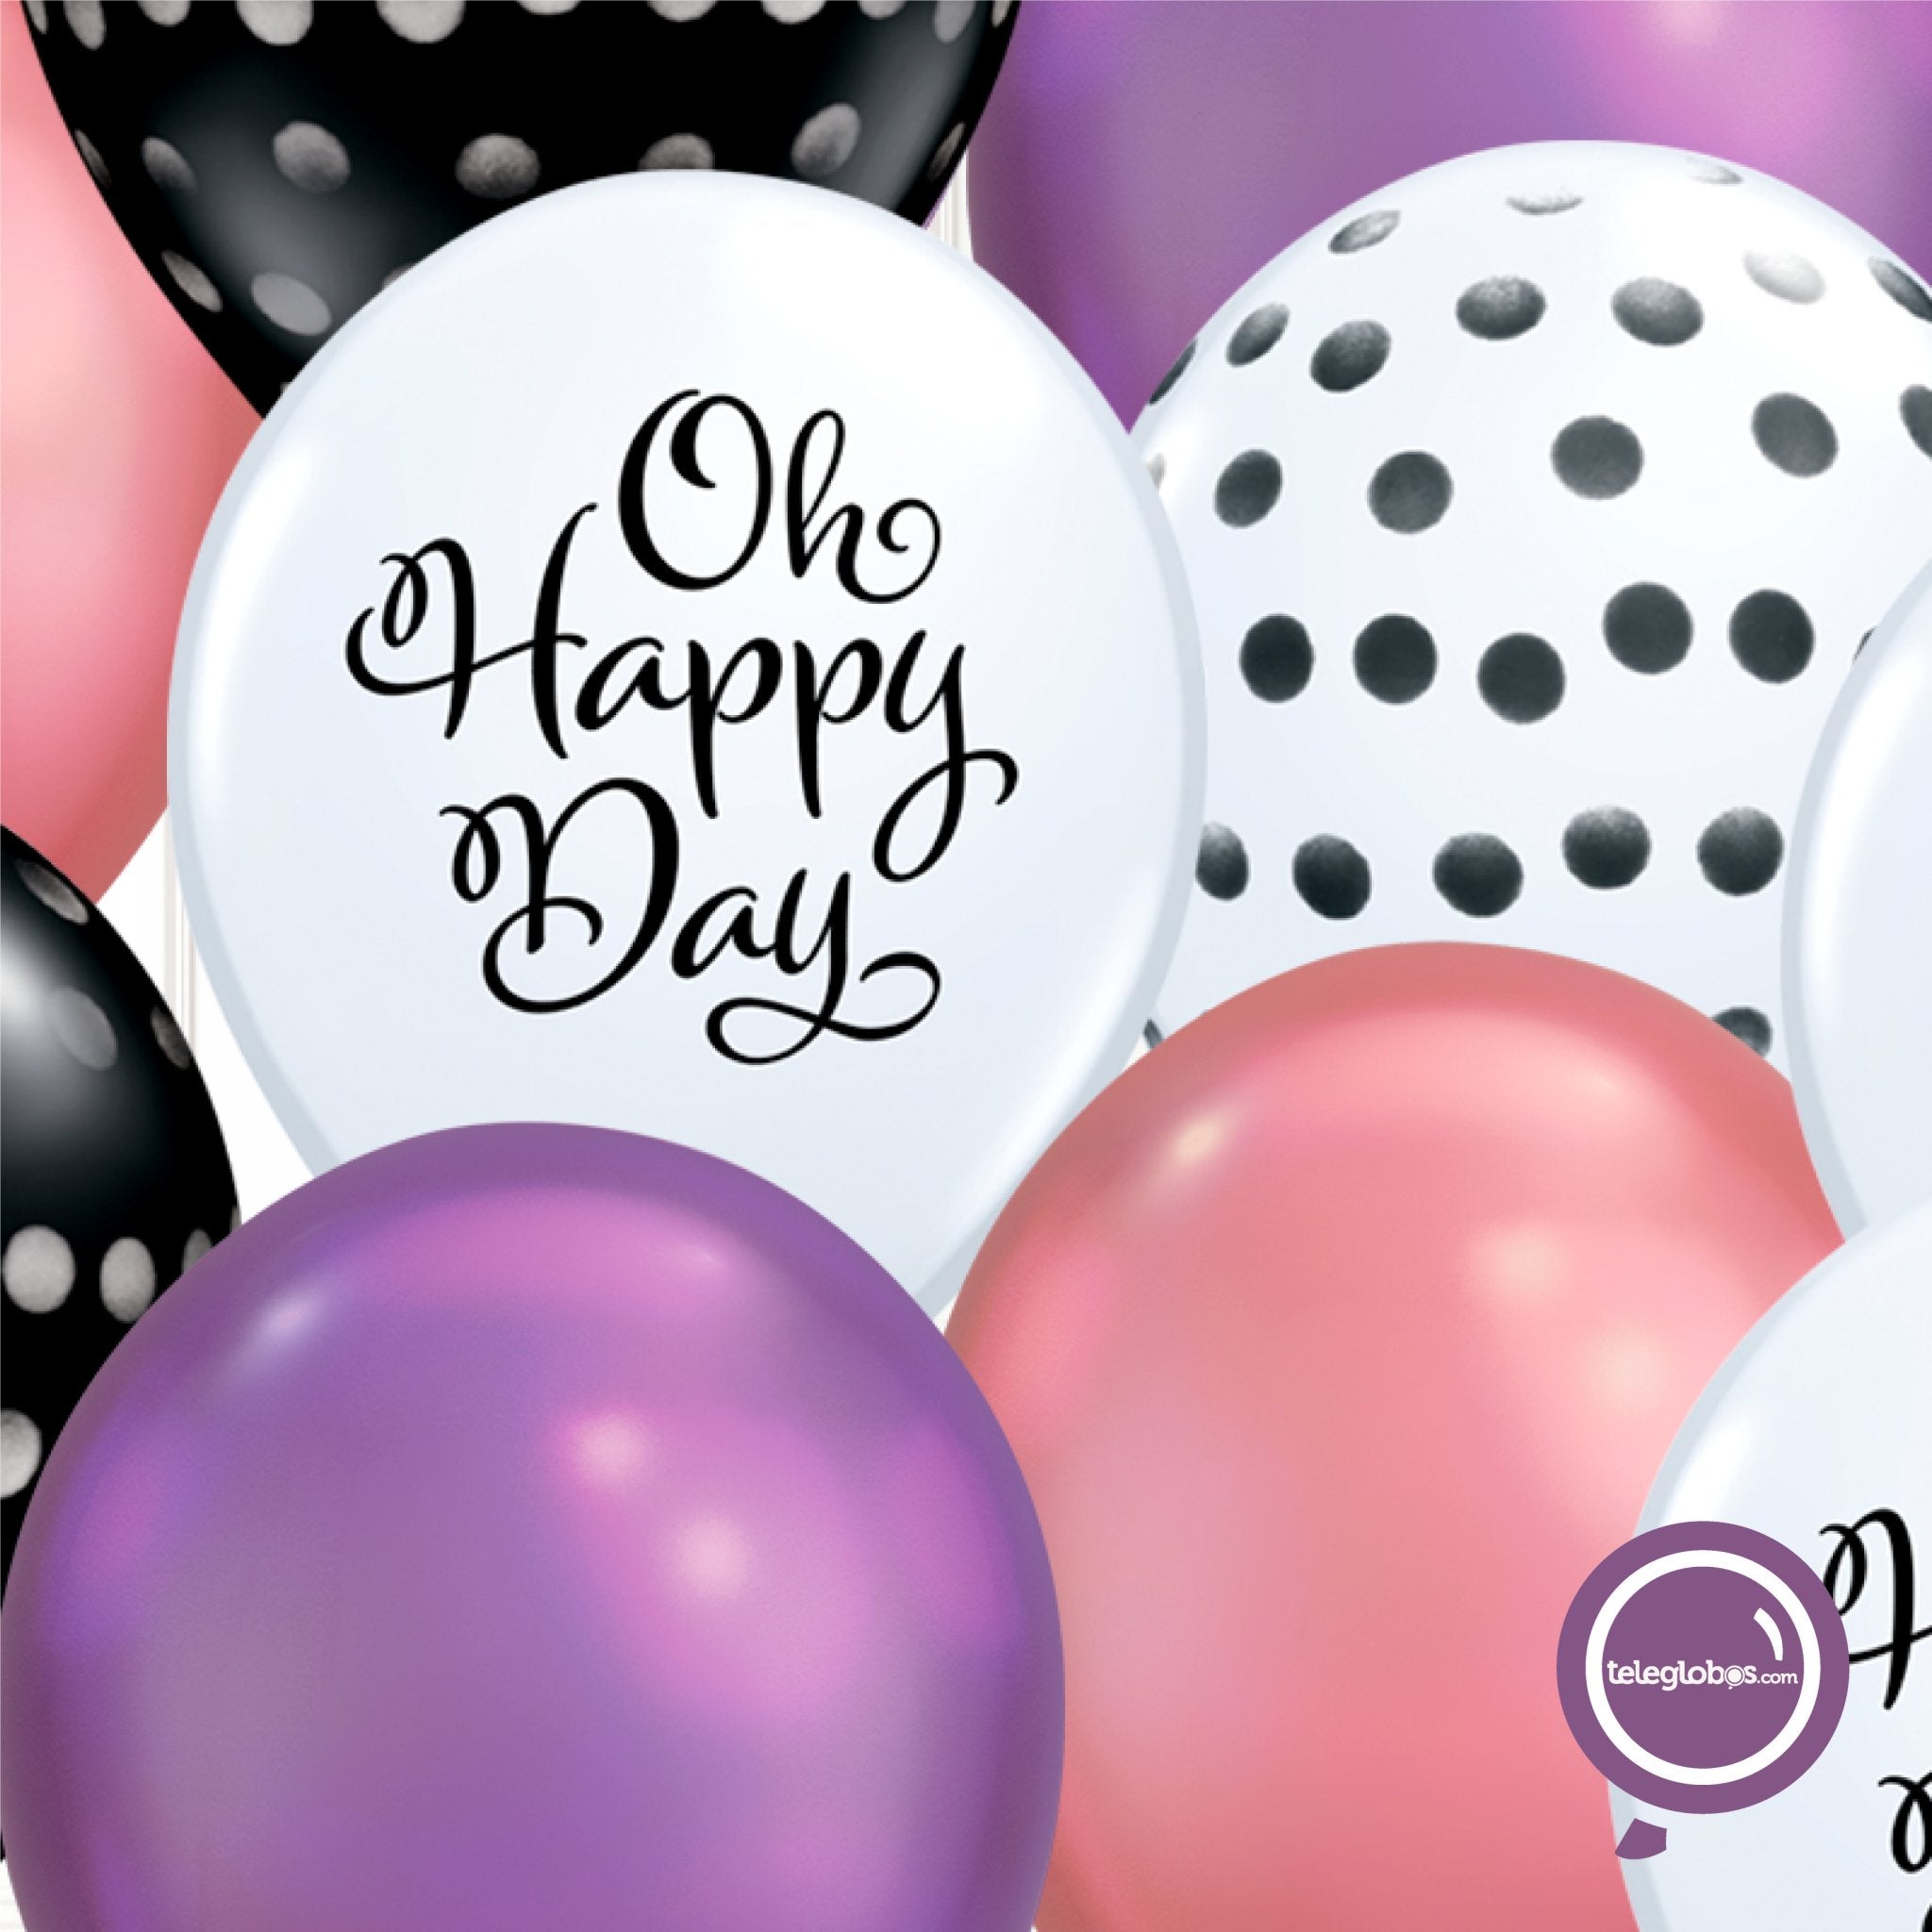 12 globos inflados con helio -Oh Happy Day/Cromo/B&W Dama- Bio* -RAC024- | Globos y Regalos Teleglobos.com.mx.